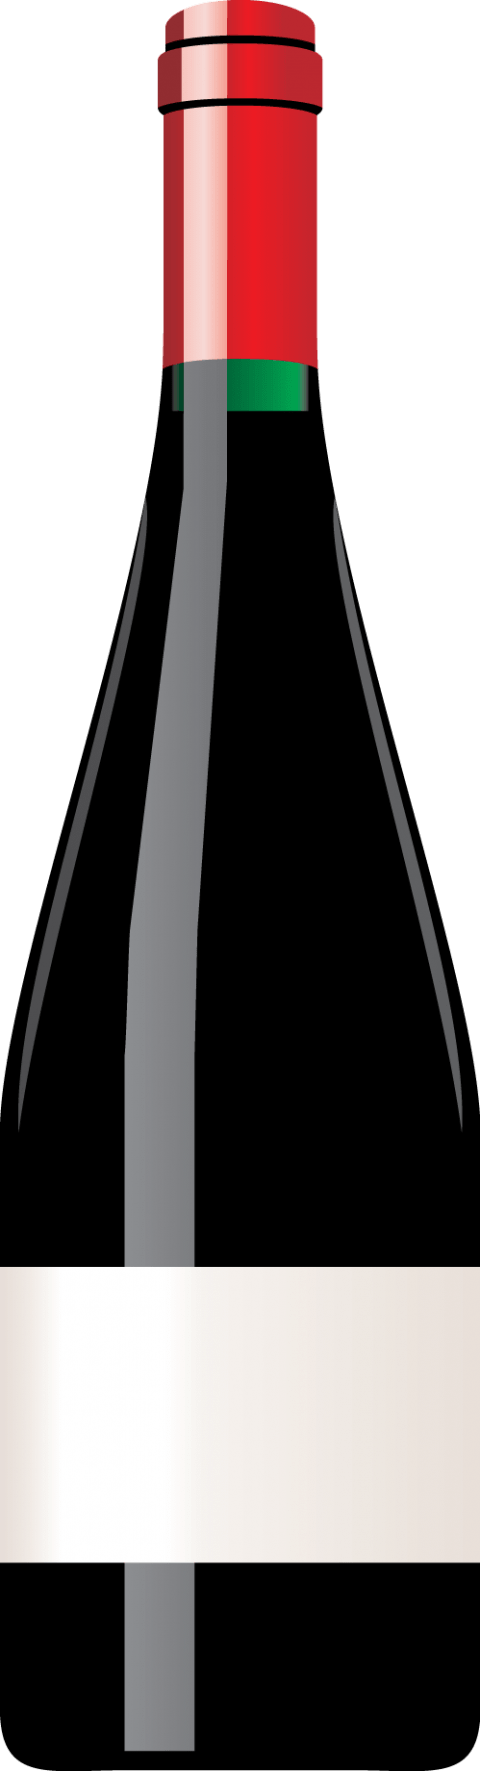 grapes clipart wine bottle